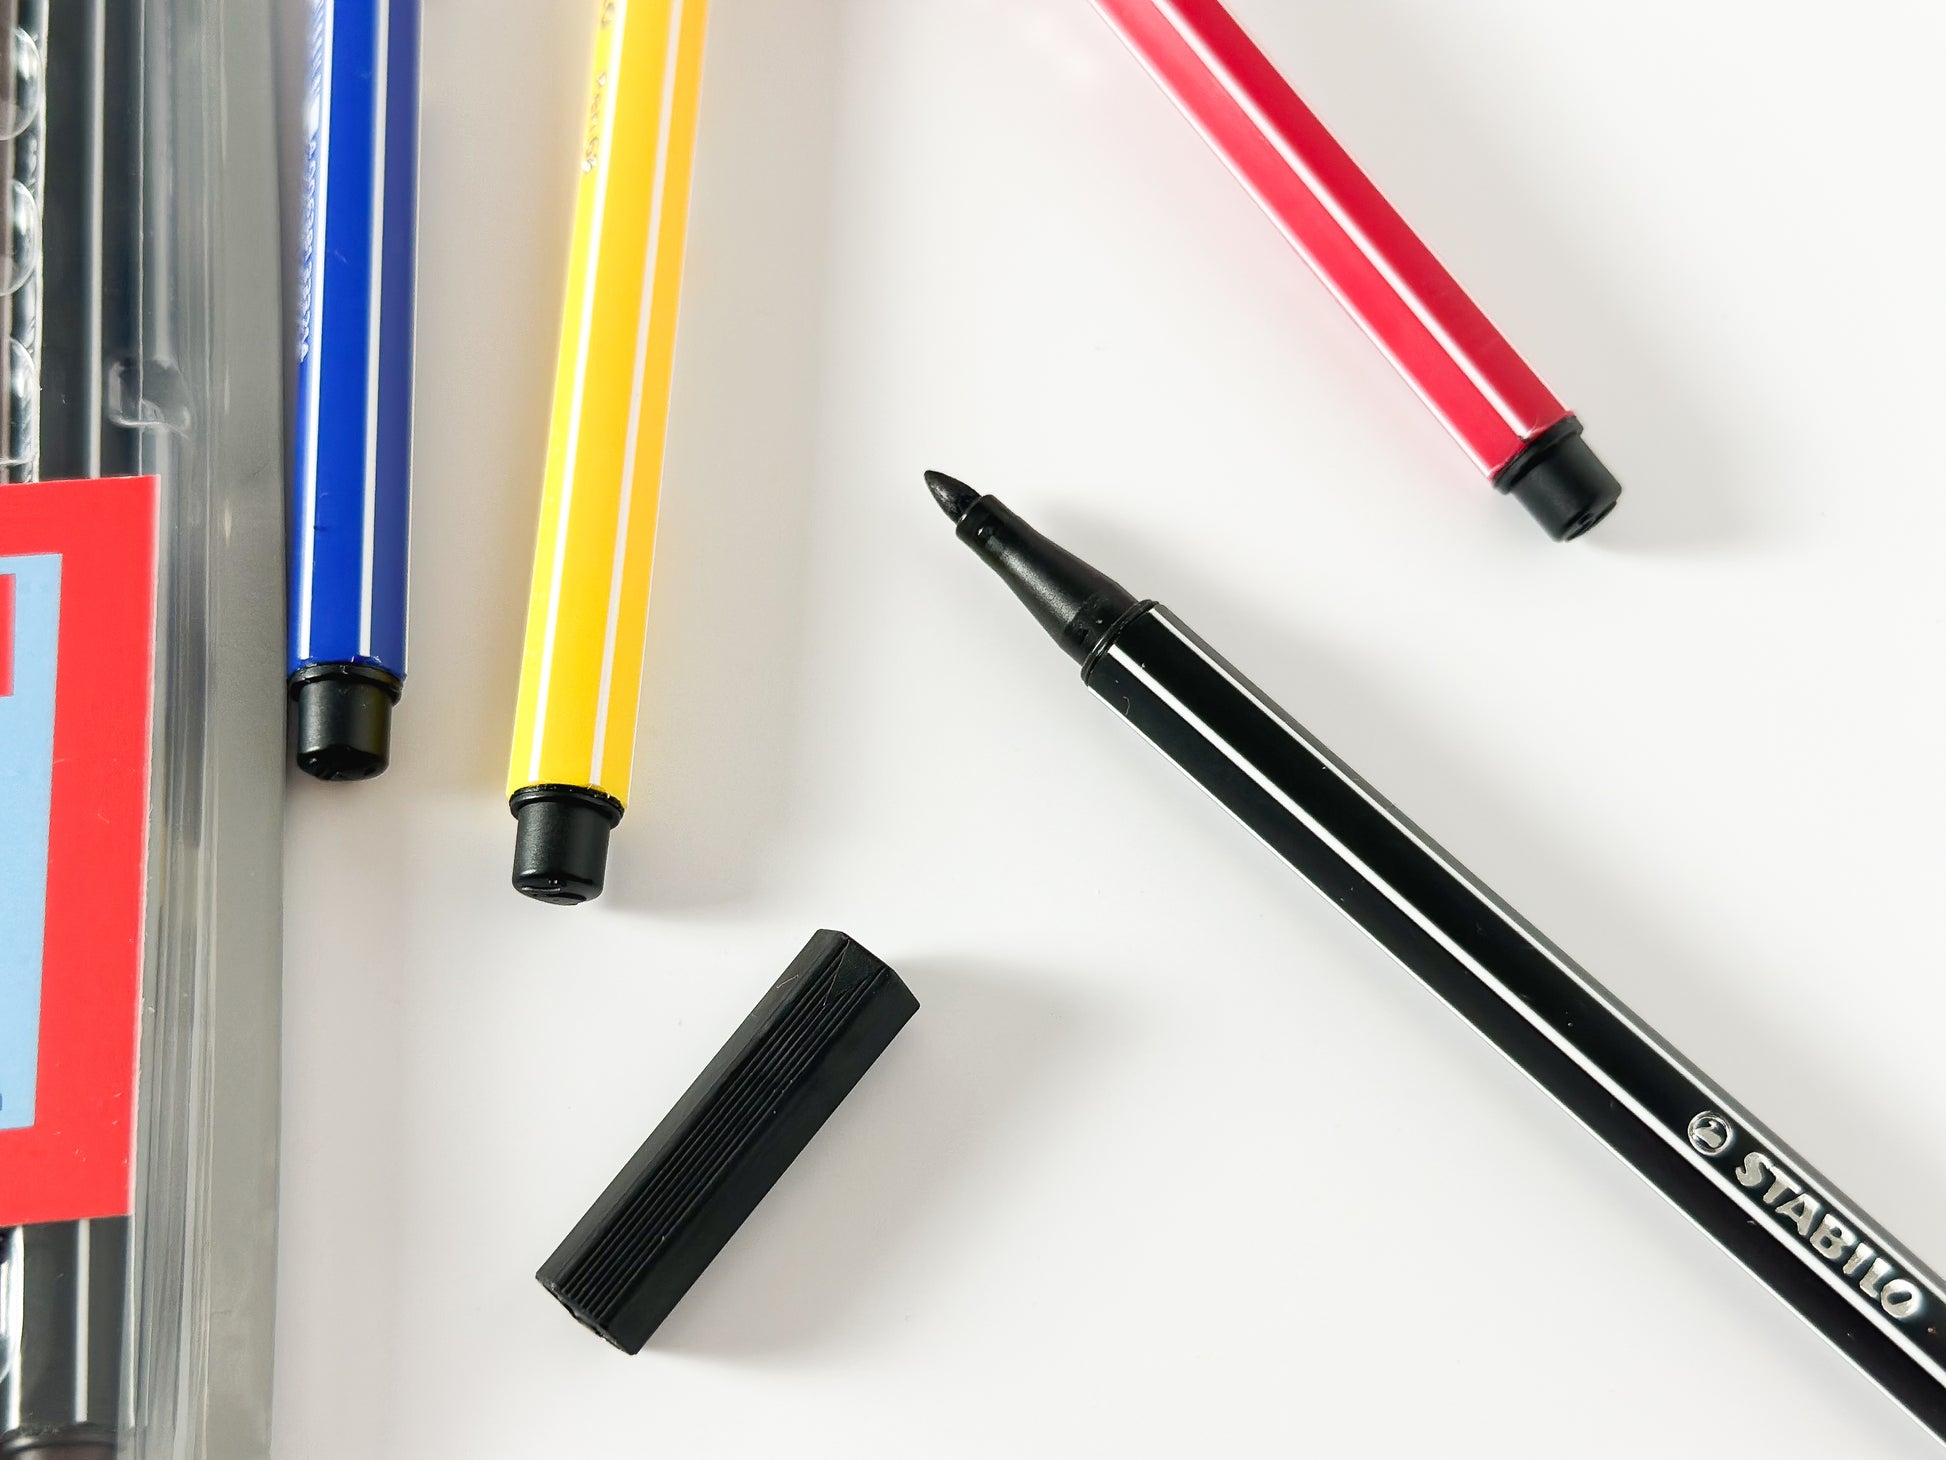 Stabilo® Point 88 20 Color Zebrui Pen Set